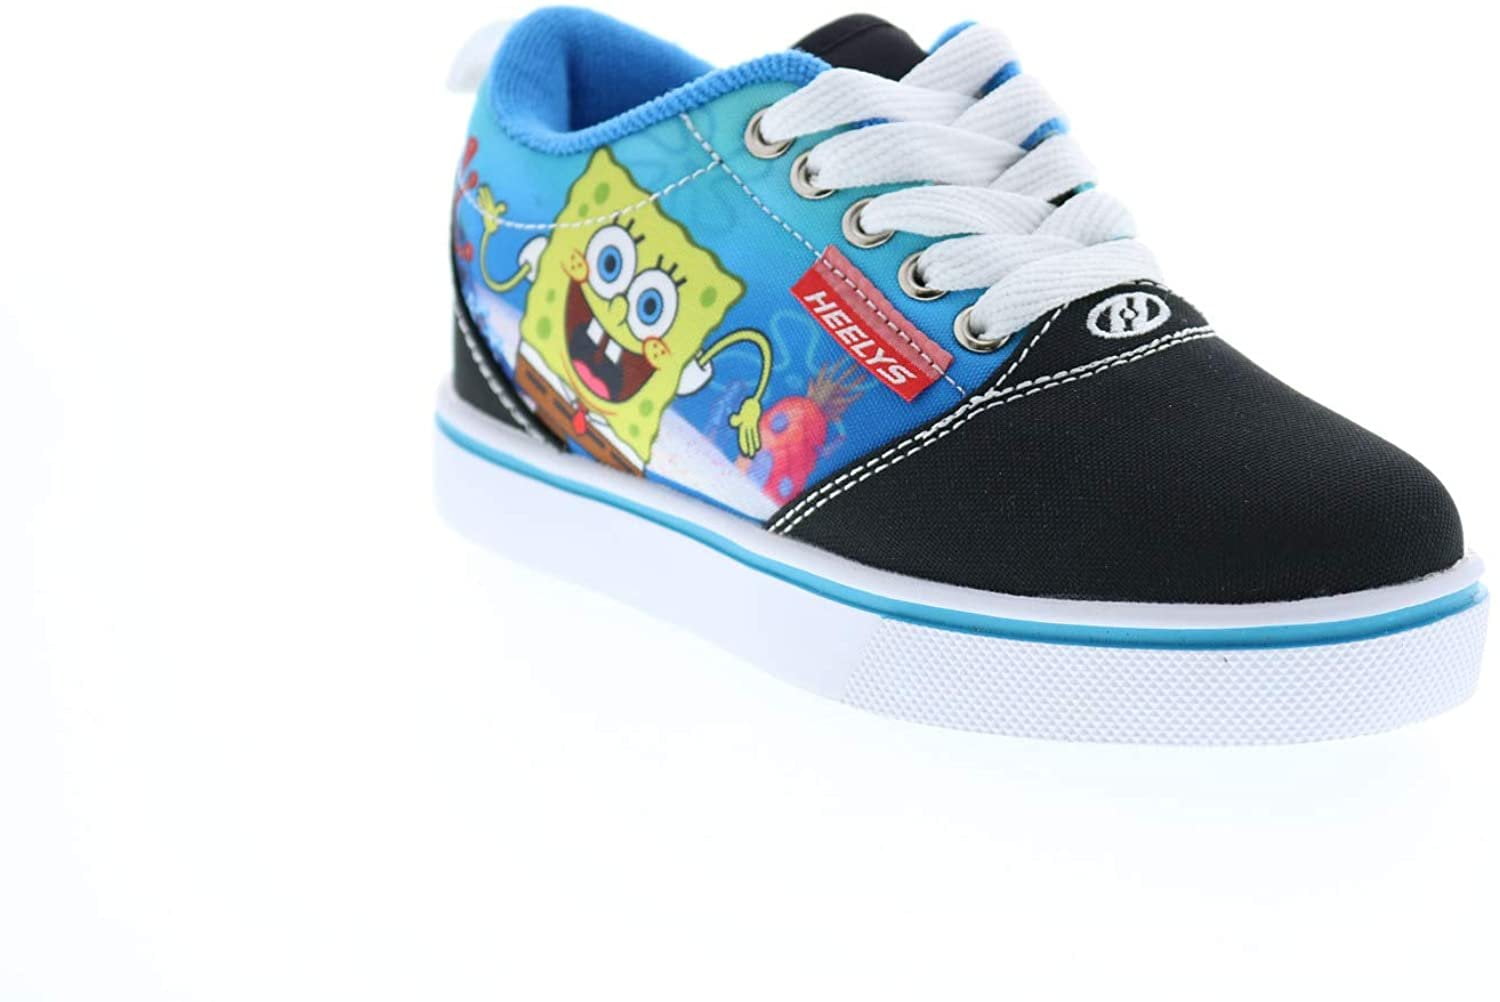 Heelys Pro20 Prints Spongebob Wheel Shoes Sneakers - Men's Size 7 -  Walmart.com